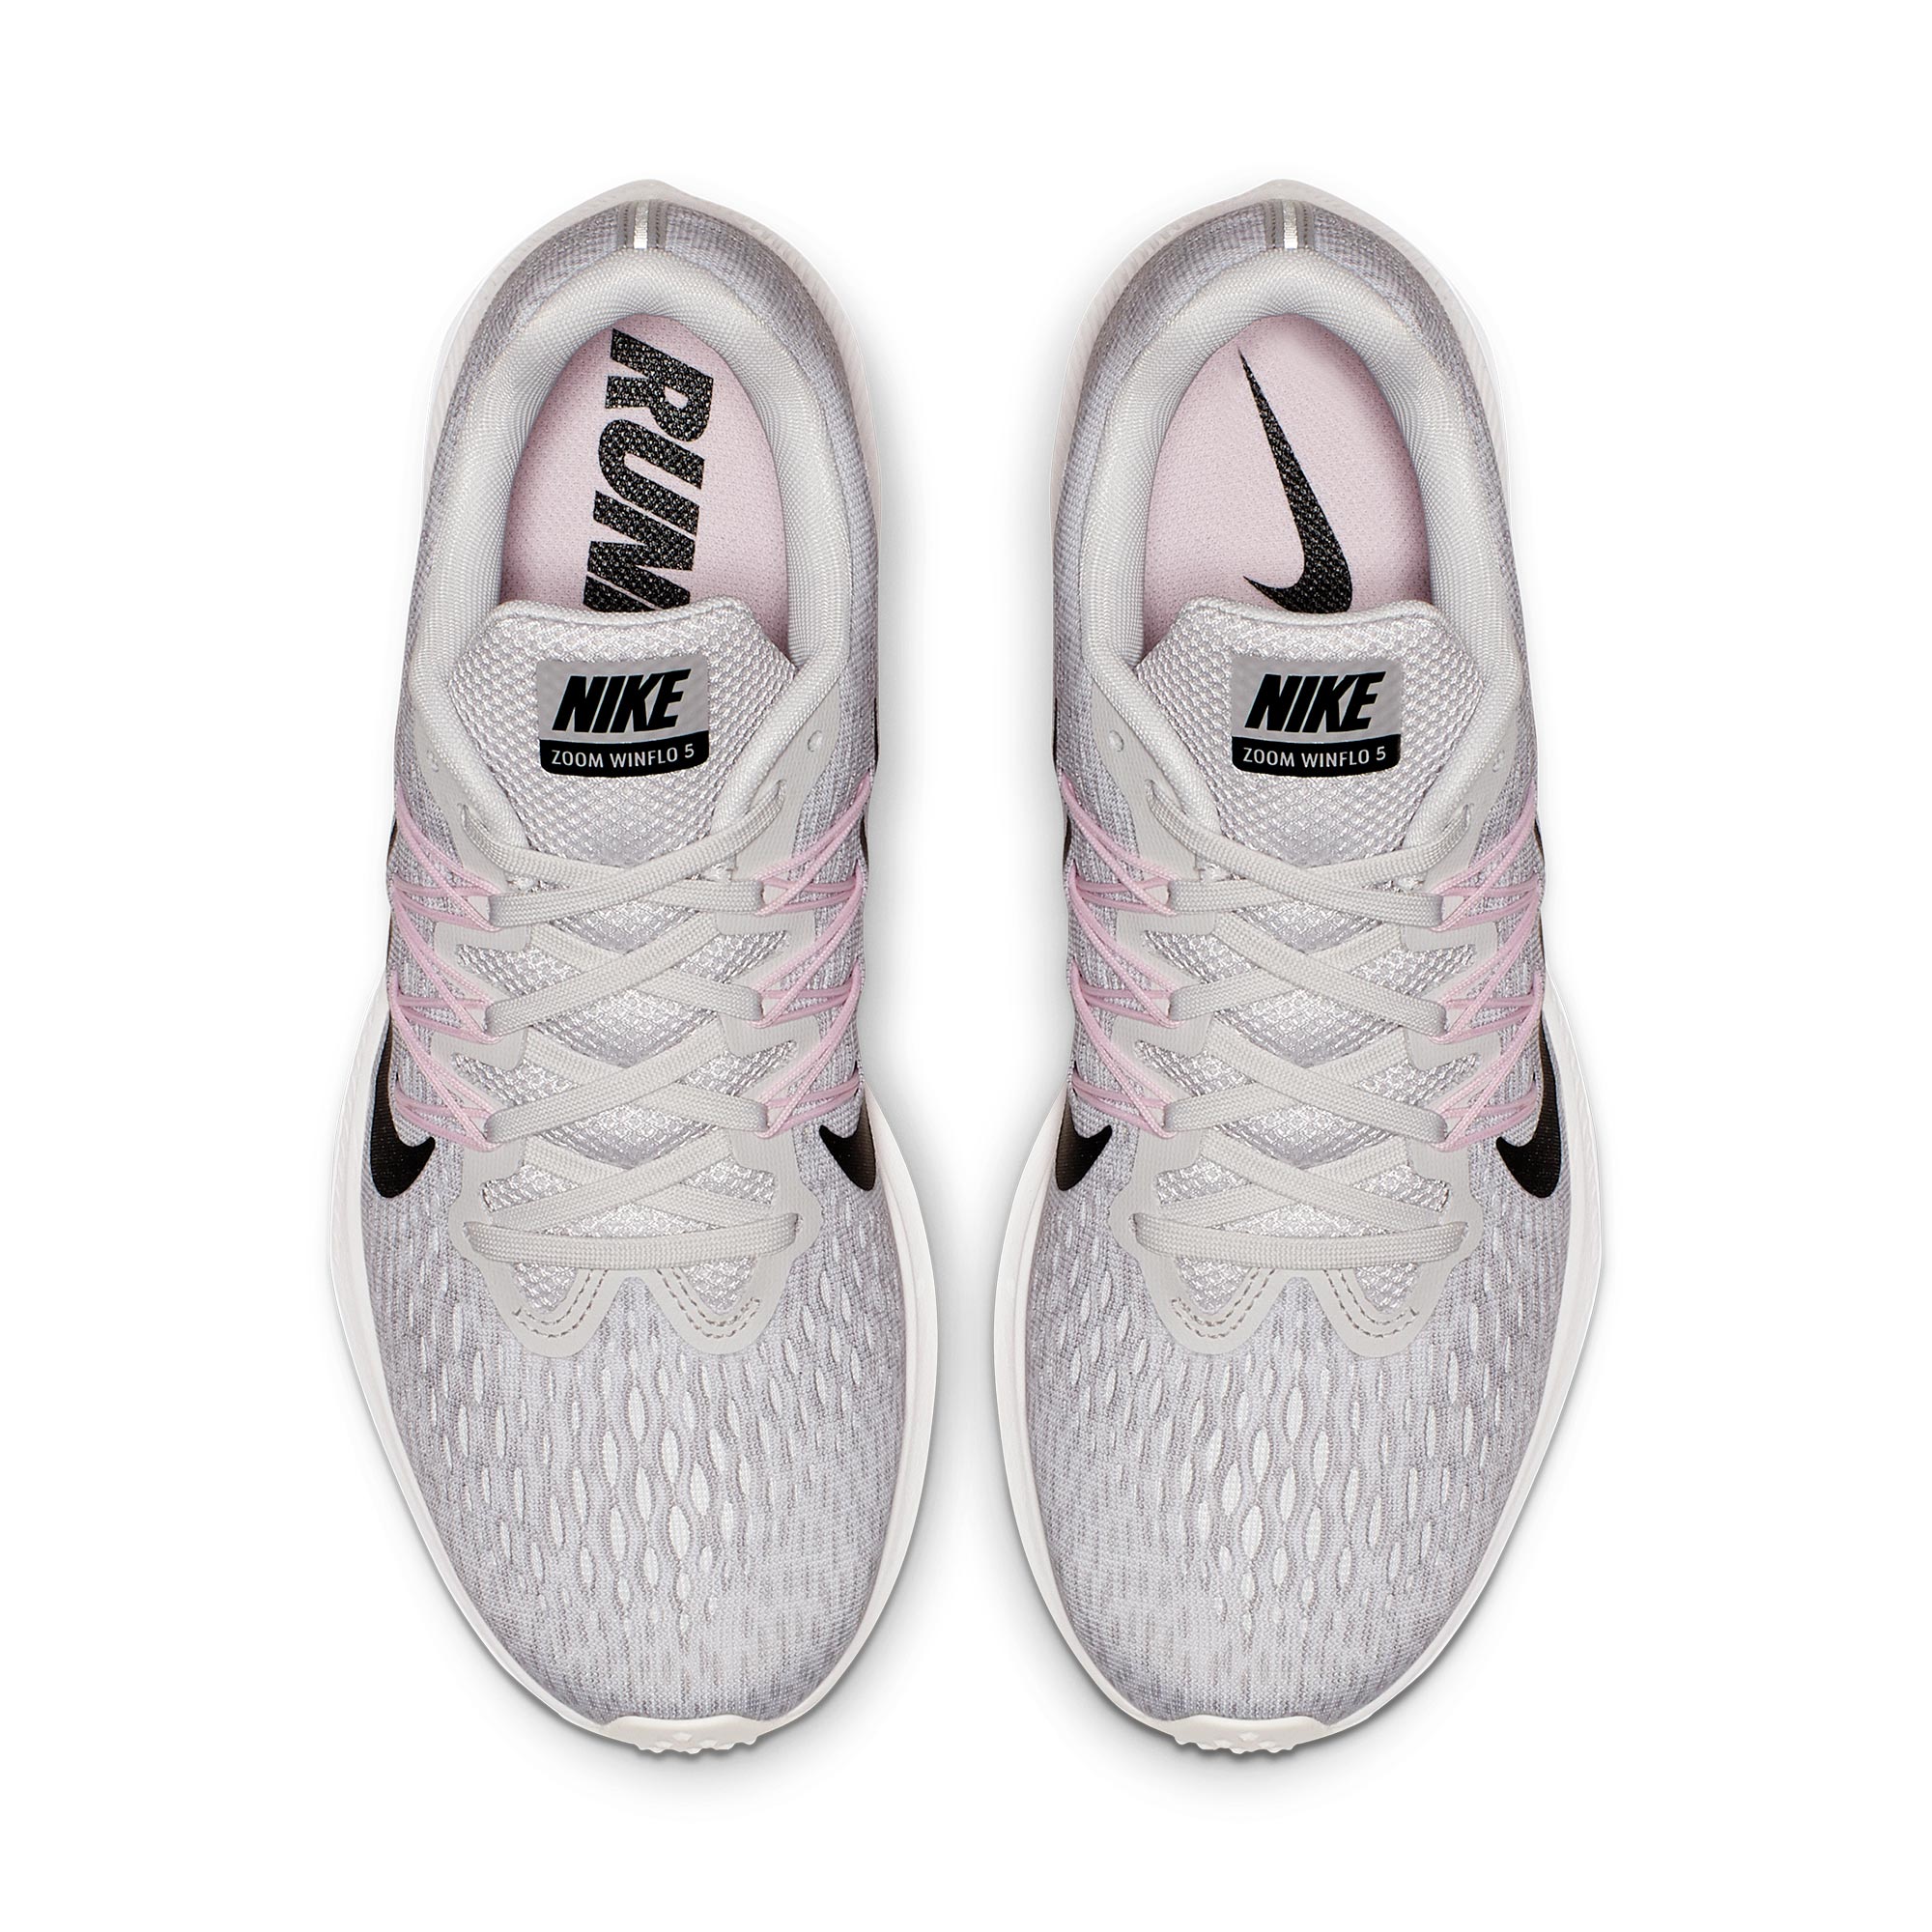 Nike shoes Air Zoom Structure 21 5 รองเท้าวิ่งผู้หญิงรองเท้ากีฬารองเท้าเบาะลมน้ำหนักเบา(สินค้ามาพร้อมกล่องจัดส่งโดย Kreey)